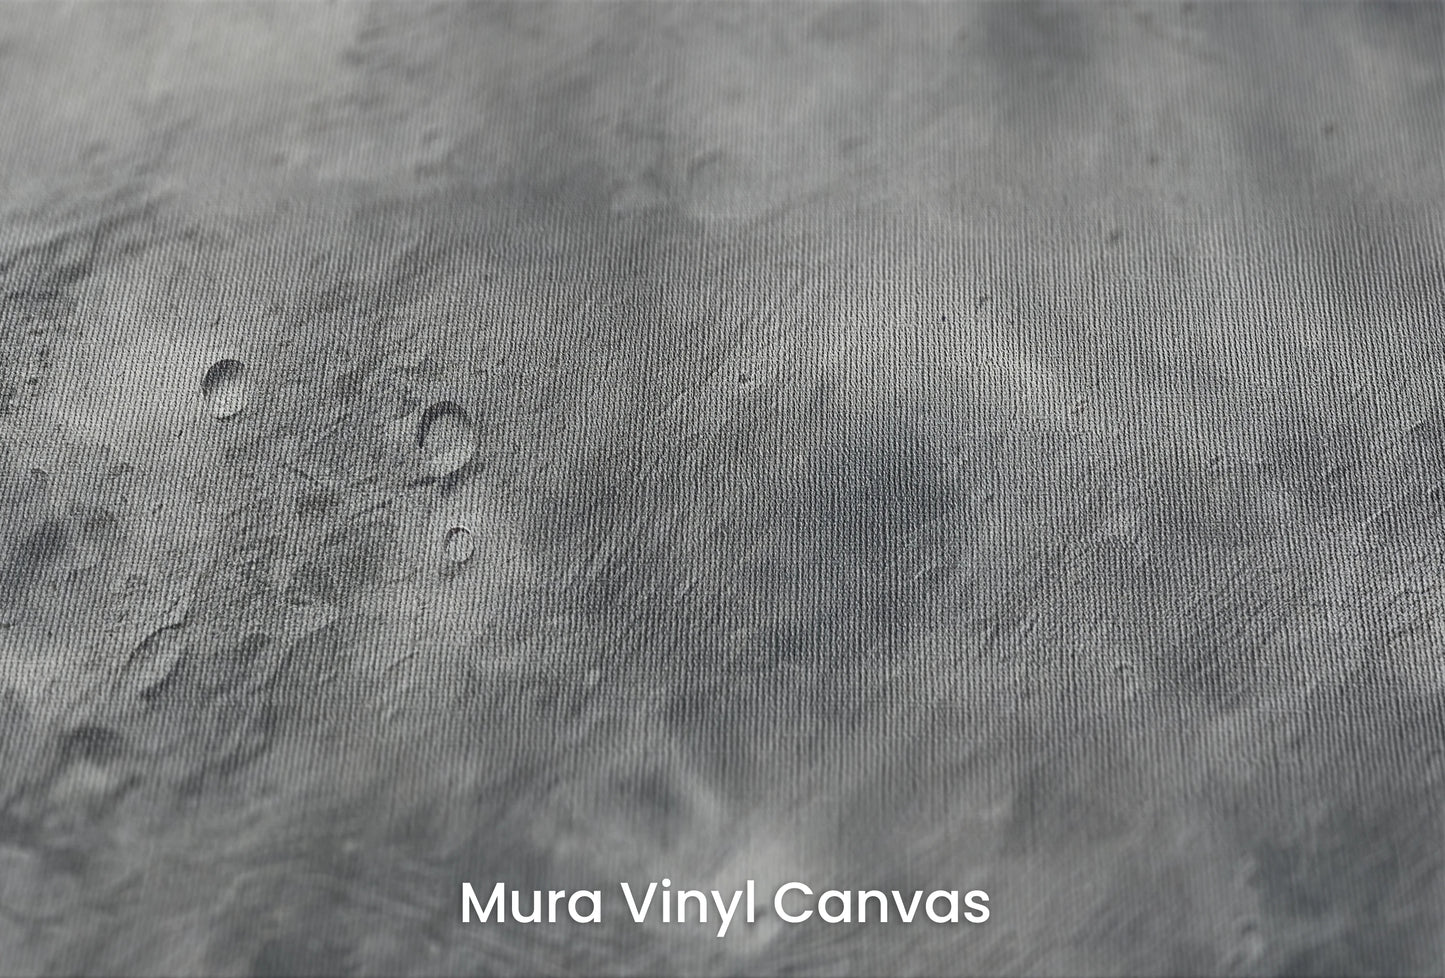 Zbliżenie na artystyczną fototapetę o nazwie Mercury's Crust na podłożu Mura Vinyl Canvas - faktura naturalnego płótna.